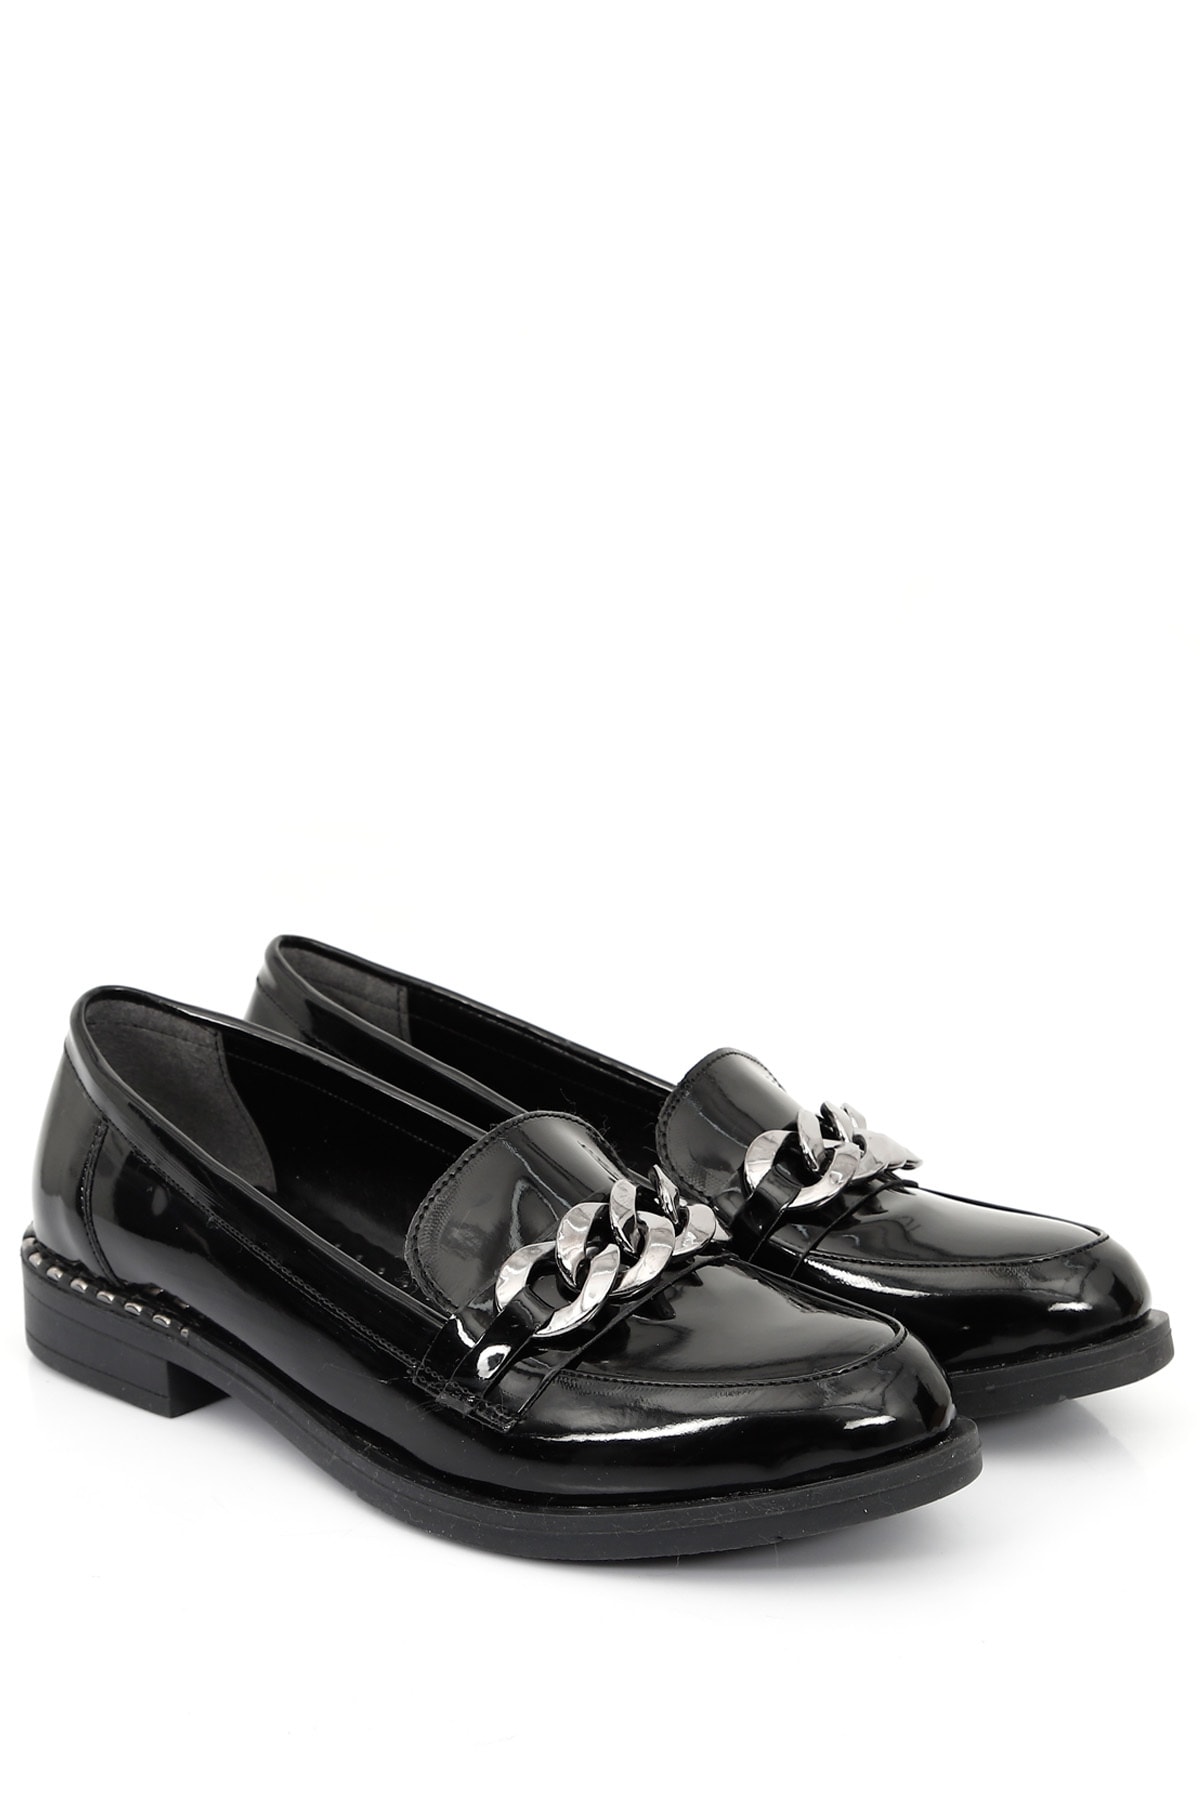 GÖNDERİ(R) Siyah Rugan Gön Yuvarlak Burun Kısa Topuklu Tokalı Kadın Loafer Günlük Ayakkabı 37108 ON11196